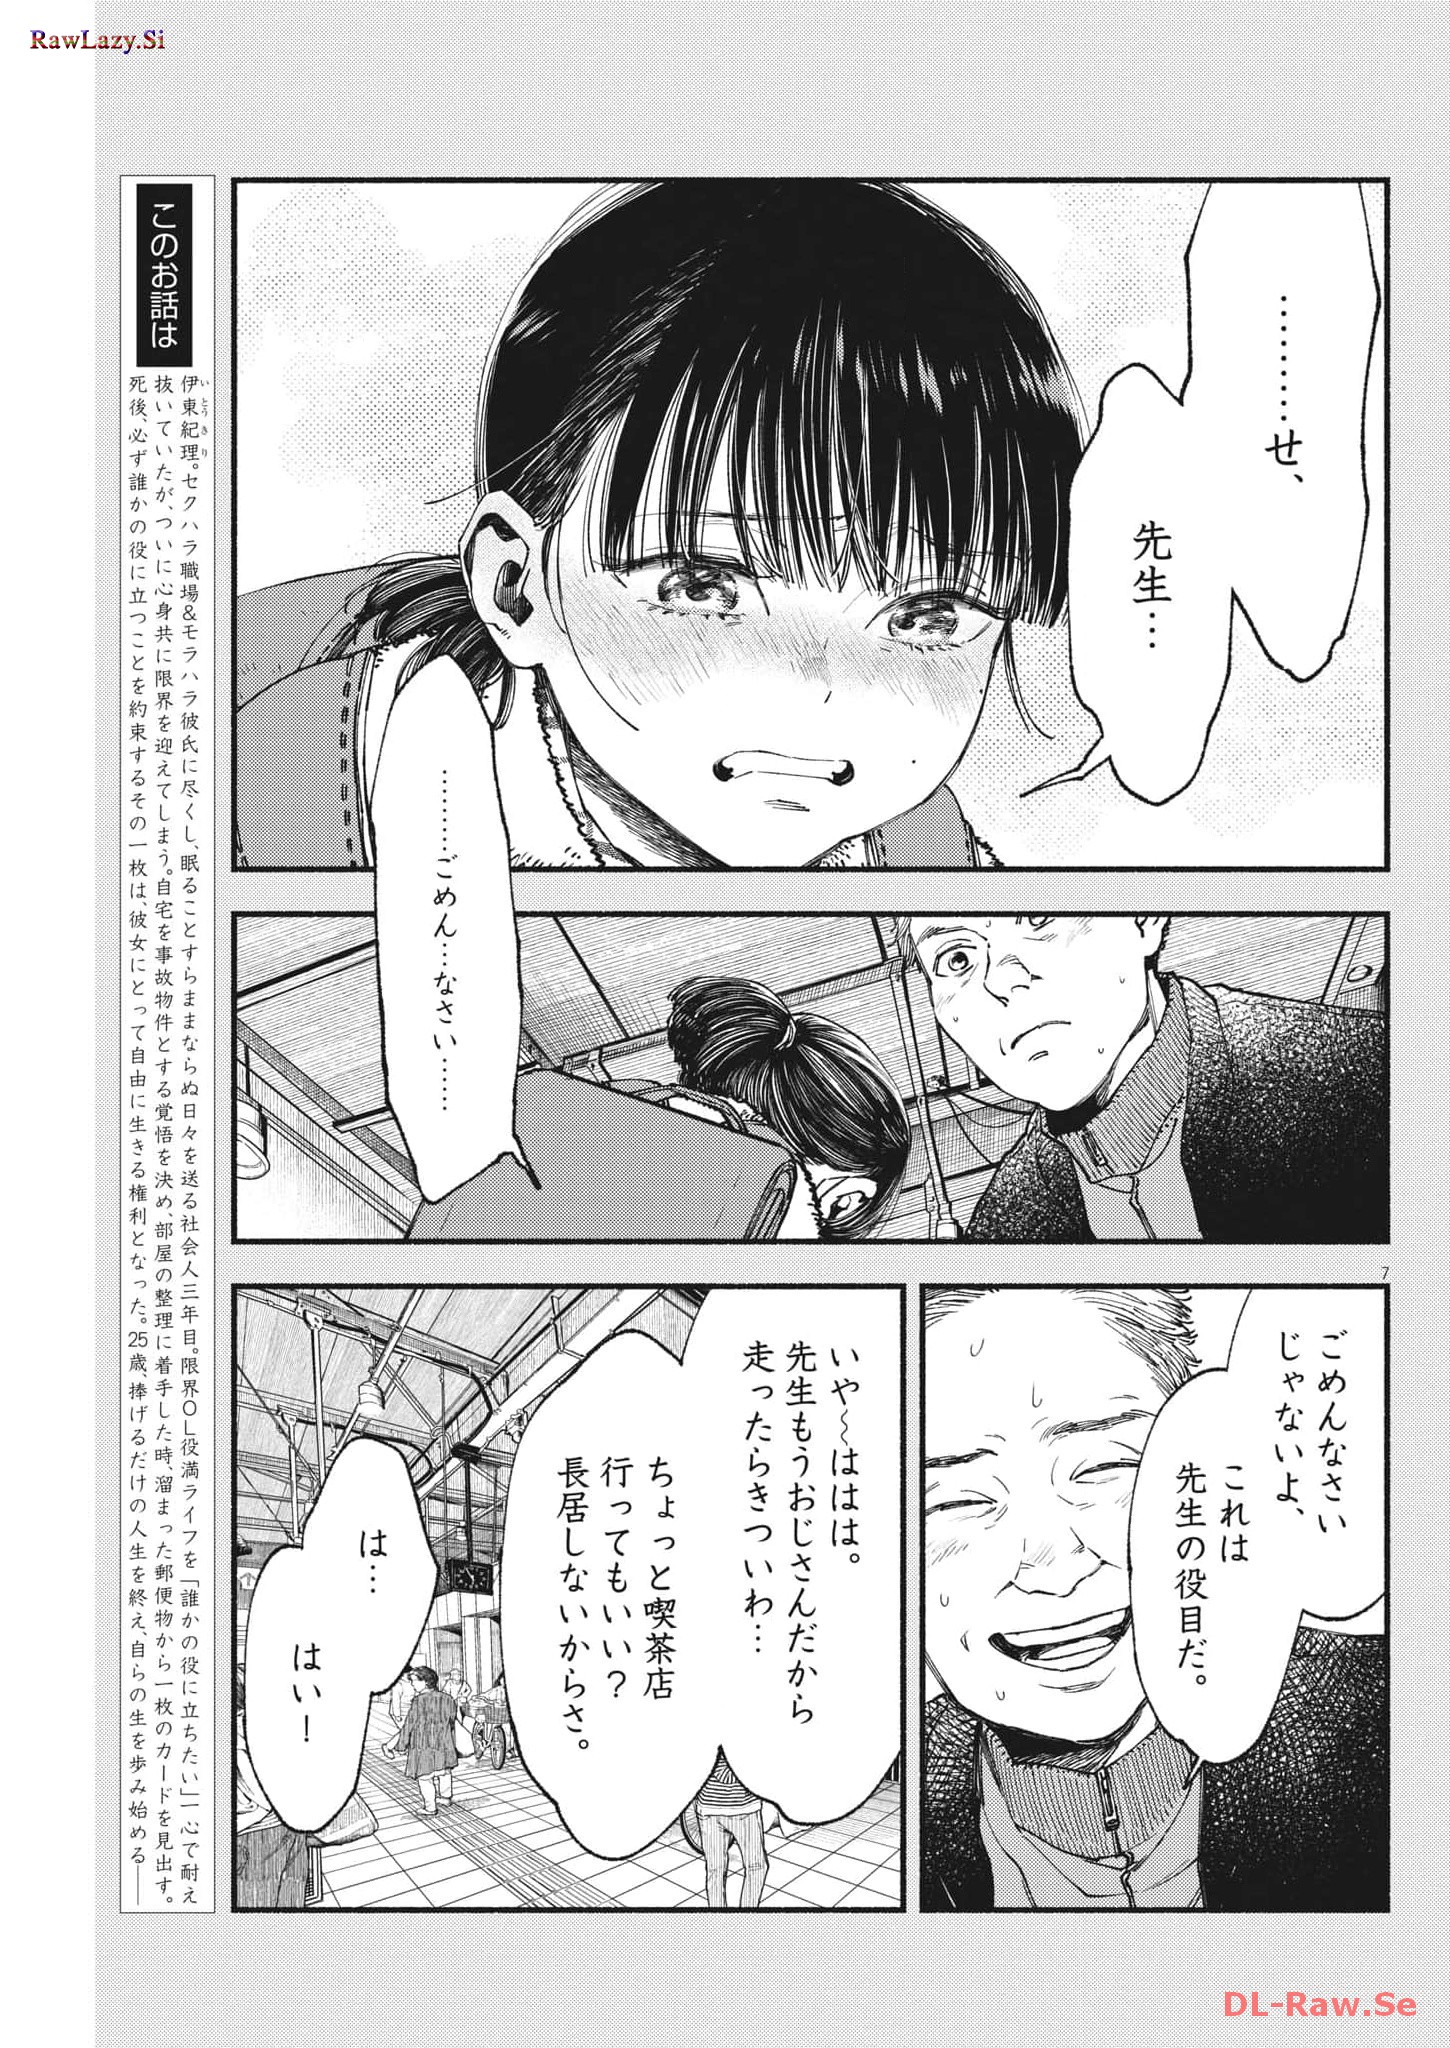 Konoyo wa Tatakau Kachi ga Aru  - Chapter 16 - Page 7